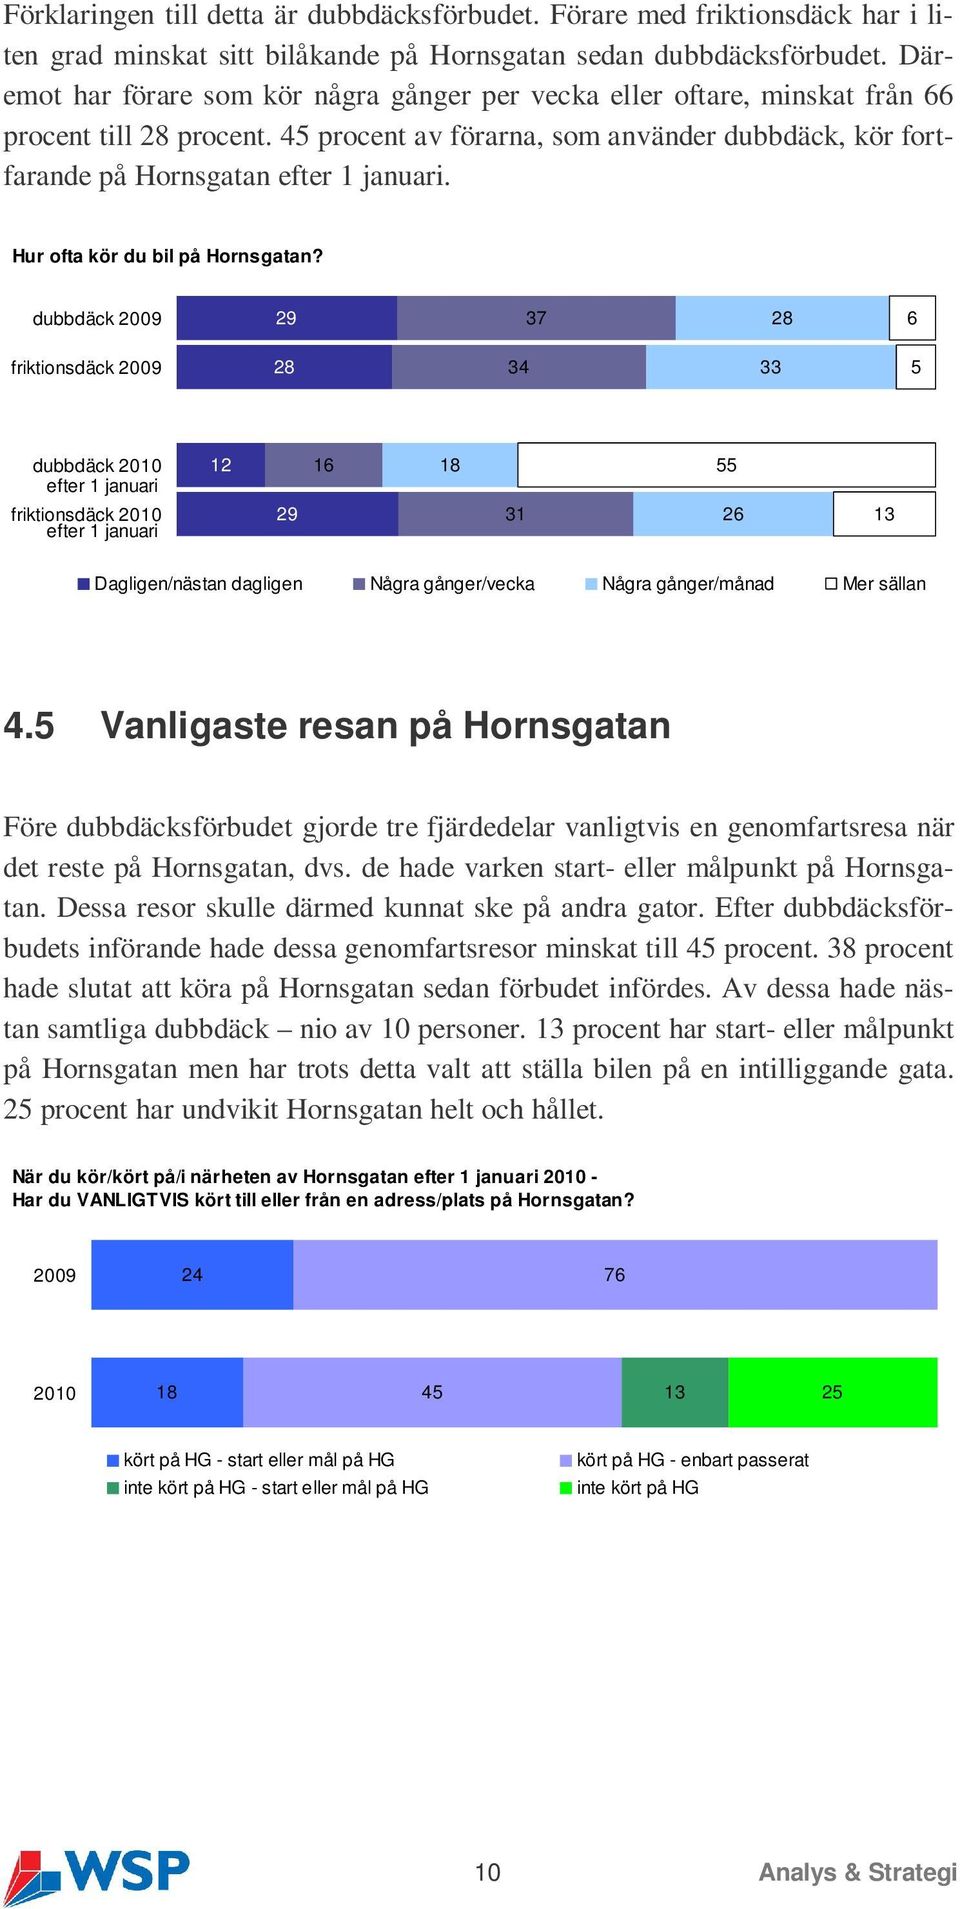 Hur ofta kör du bil på Hornsgatan?